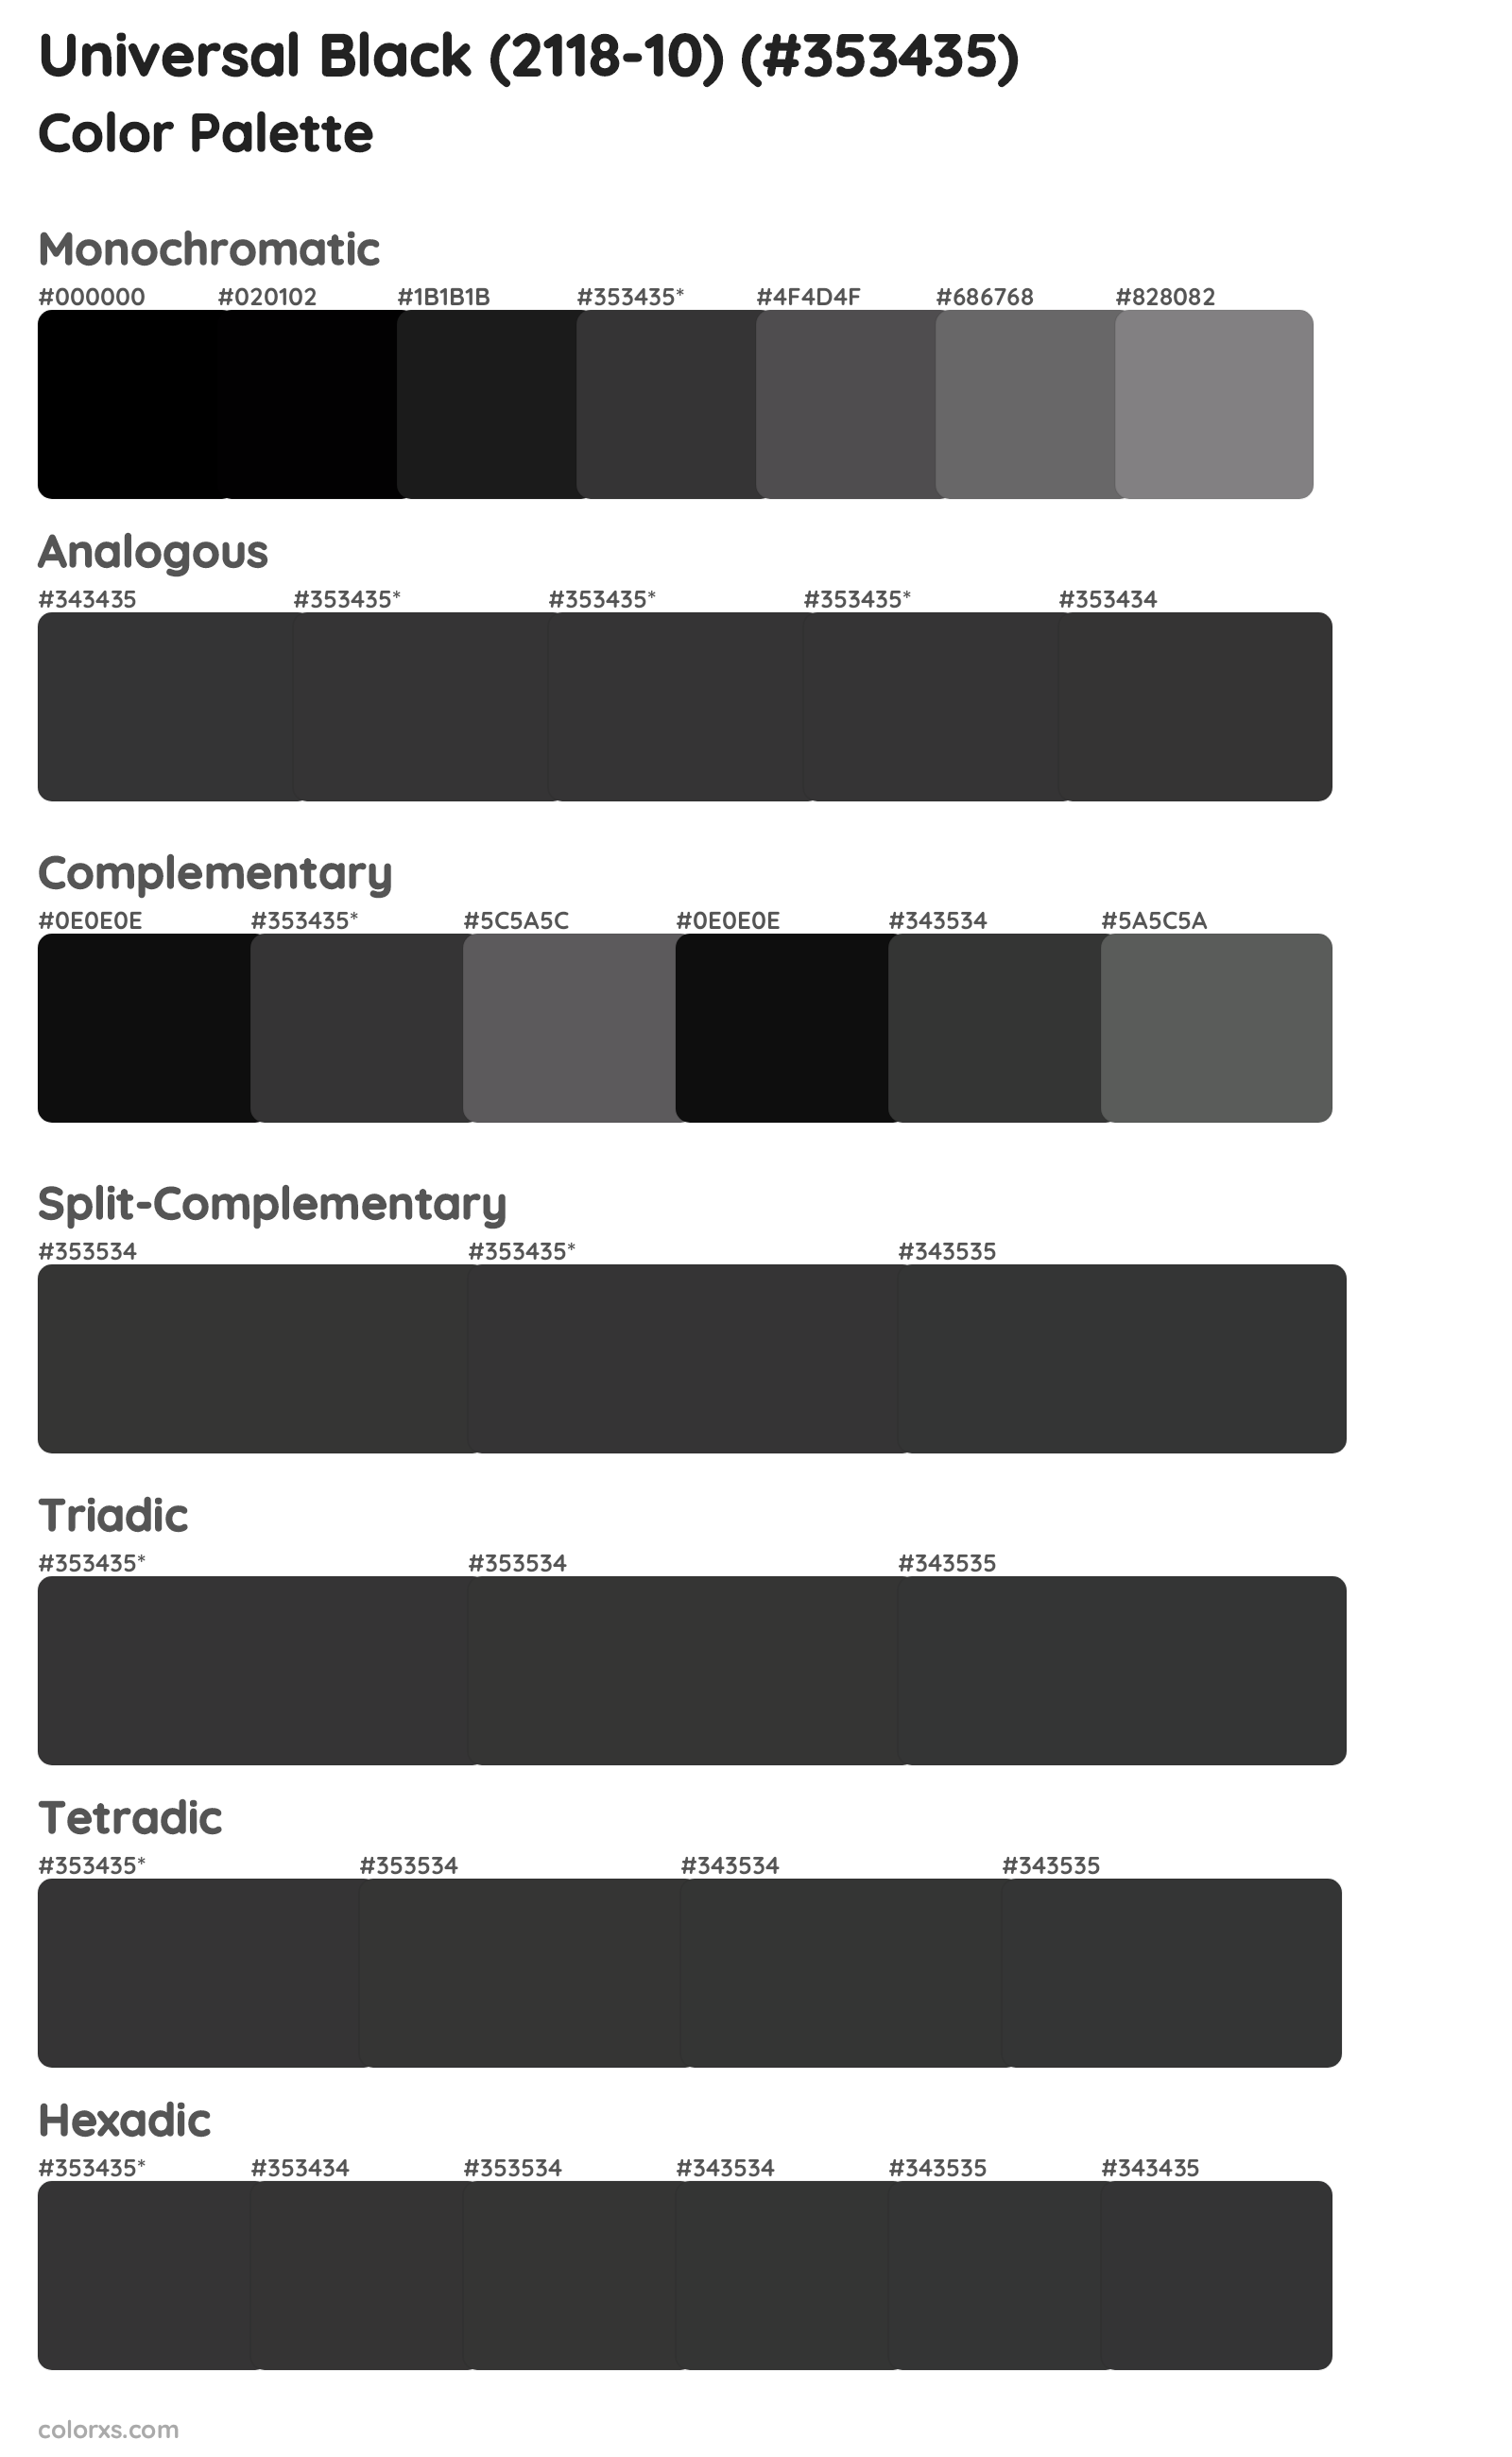 Universal Black (2118-10) Color Scheme Palettes